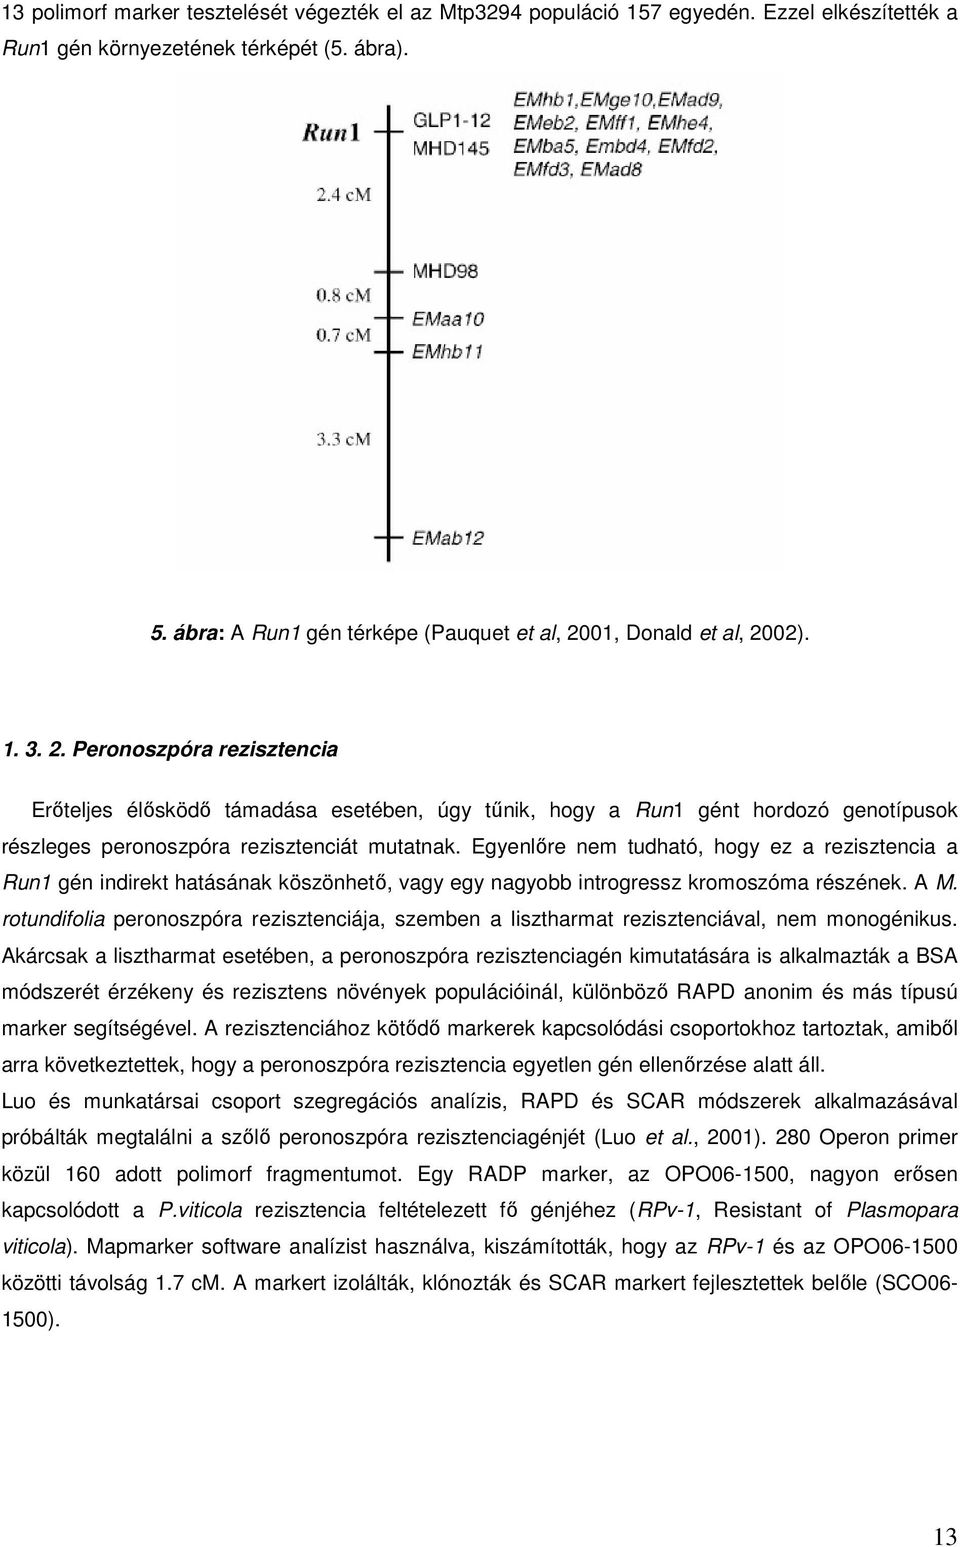 01, Donald et al, 2002). 1. 3. 2. Peronoszpóra rezisztencia Erőteljes élősködő támadása esetében, úgy tűnik, hogy a Run1 gént hordozó genotípusok részleges peronoszpóra rezisztenciát mutatnak.